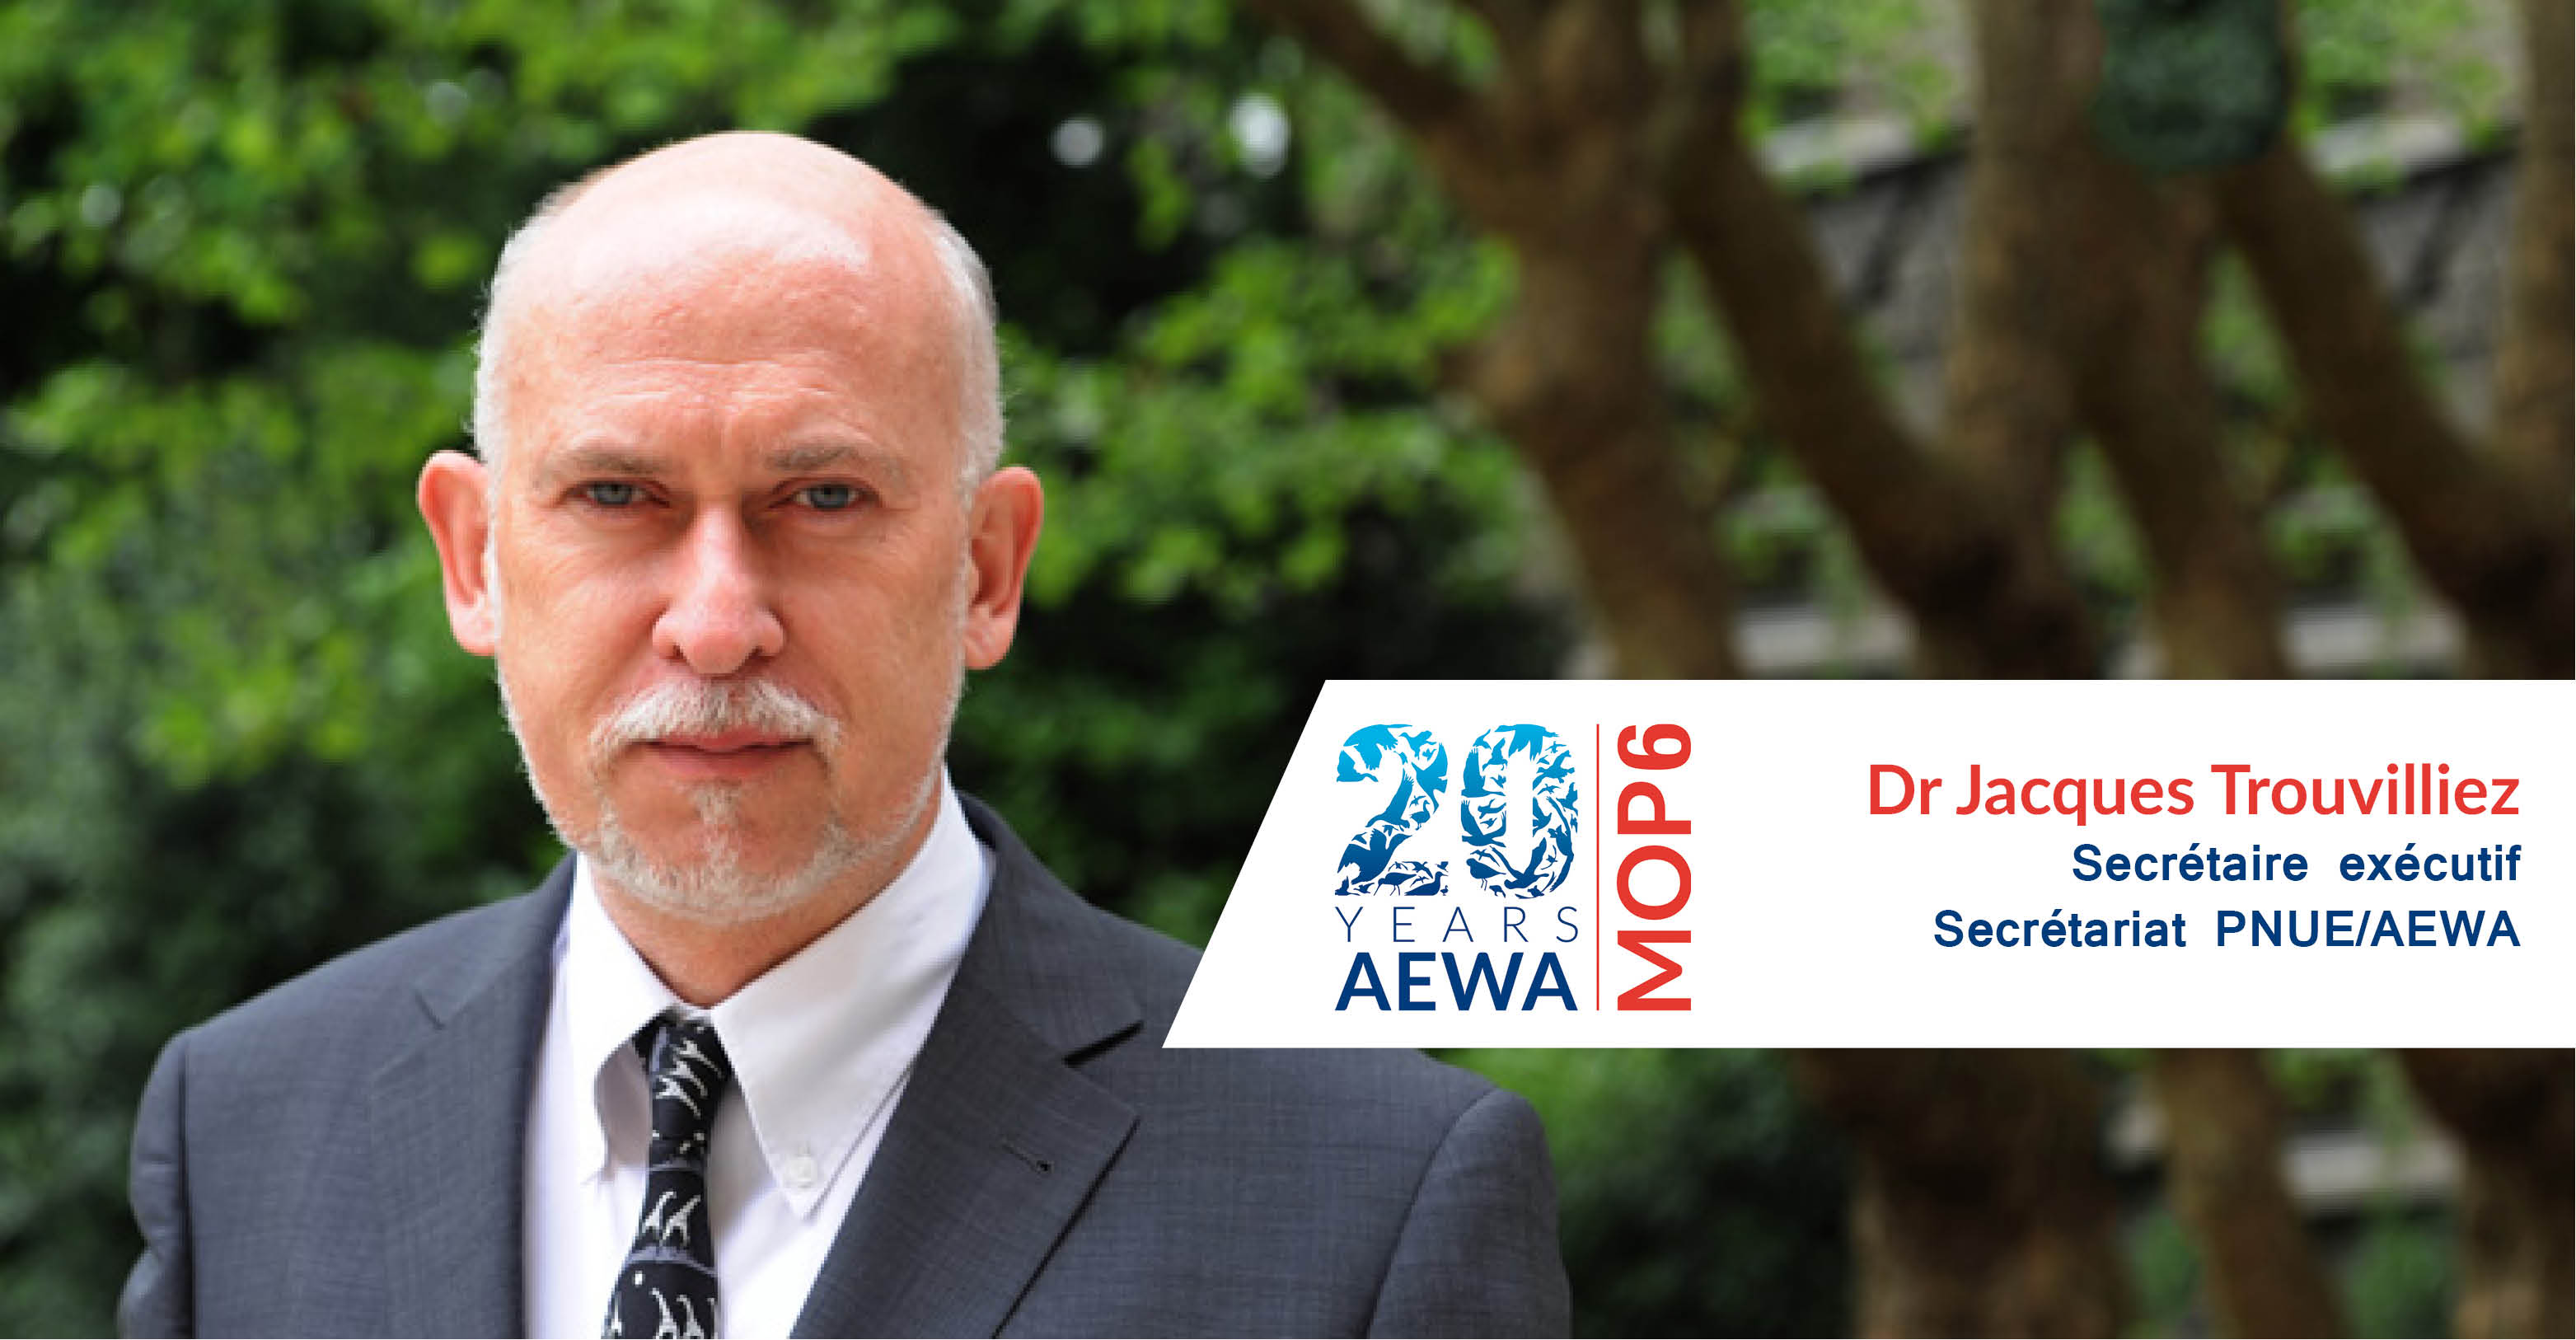 Dr. Jacques Trouvilliez, Secrétaire exécutif, Secrétariat PNUE/AEWA